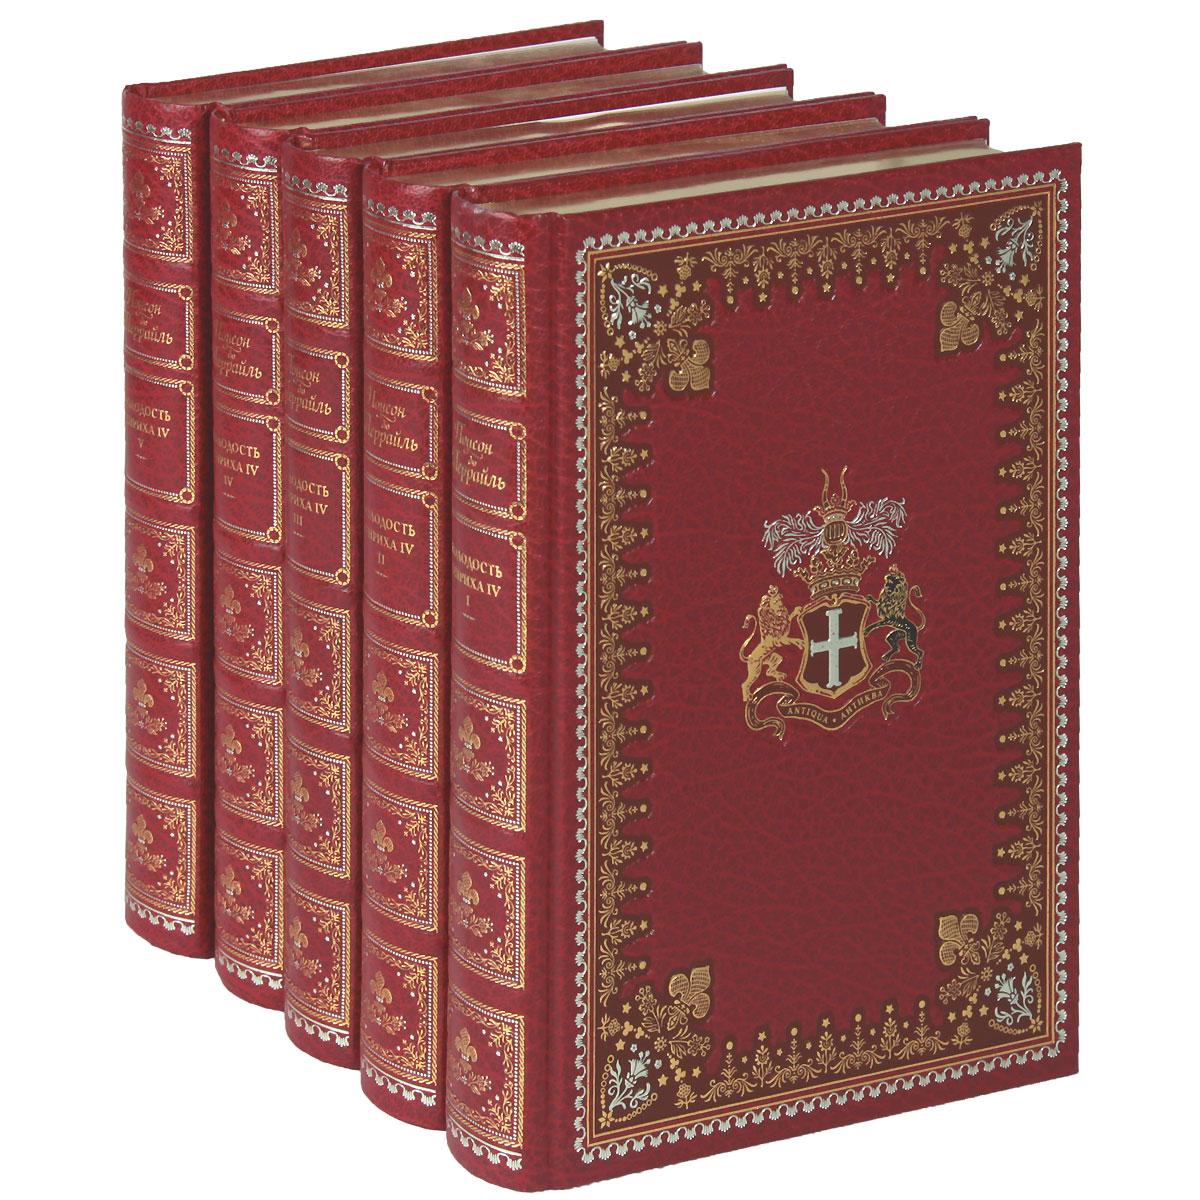 Молодость Генриха IV. В 5 томах (эксклюзивный подарочный комплект). Понсон дю Террайль